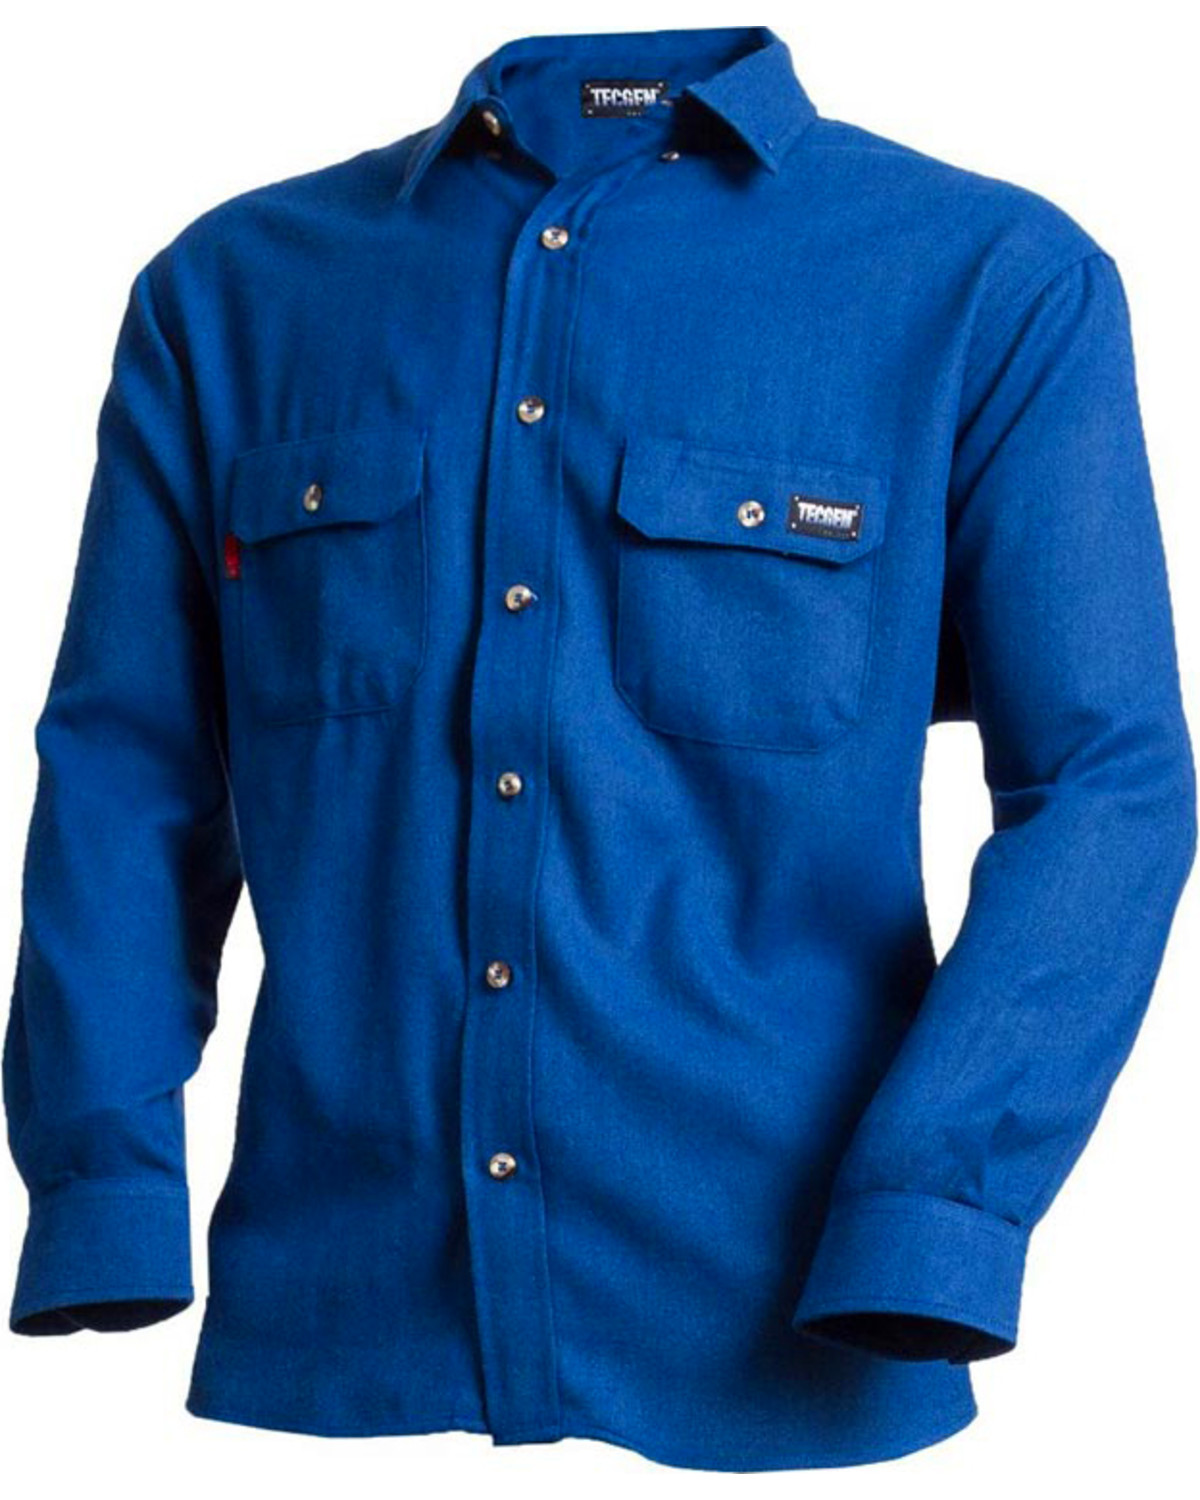 Tecgen Men's FR Deluxe Long Sleeve Work Shirt